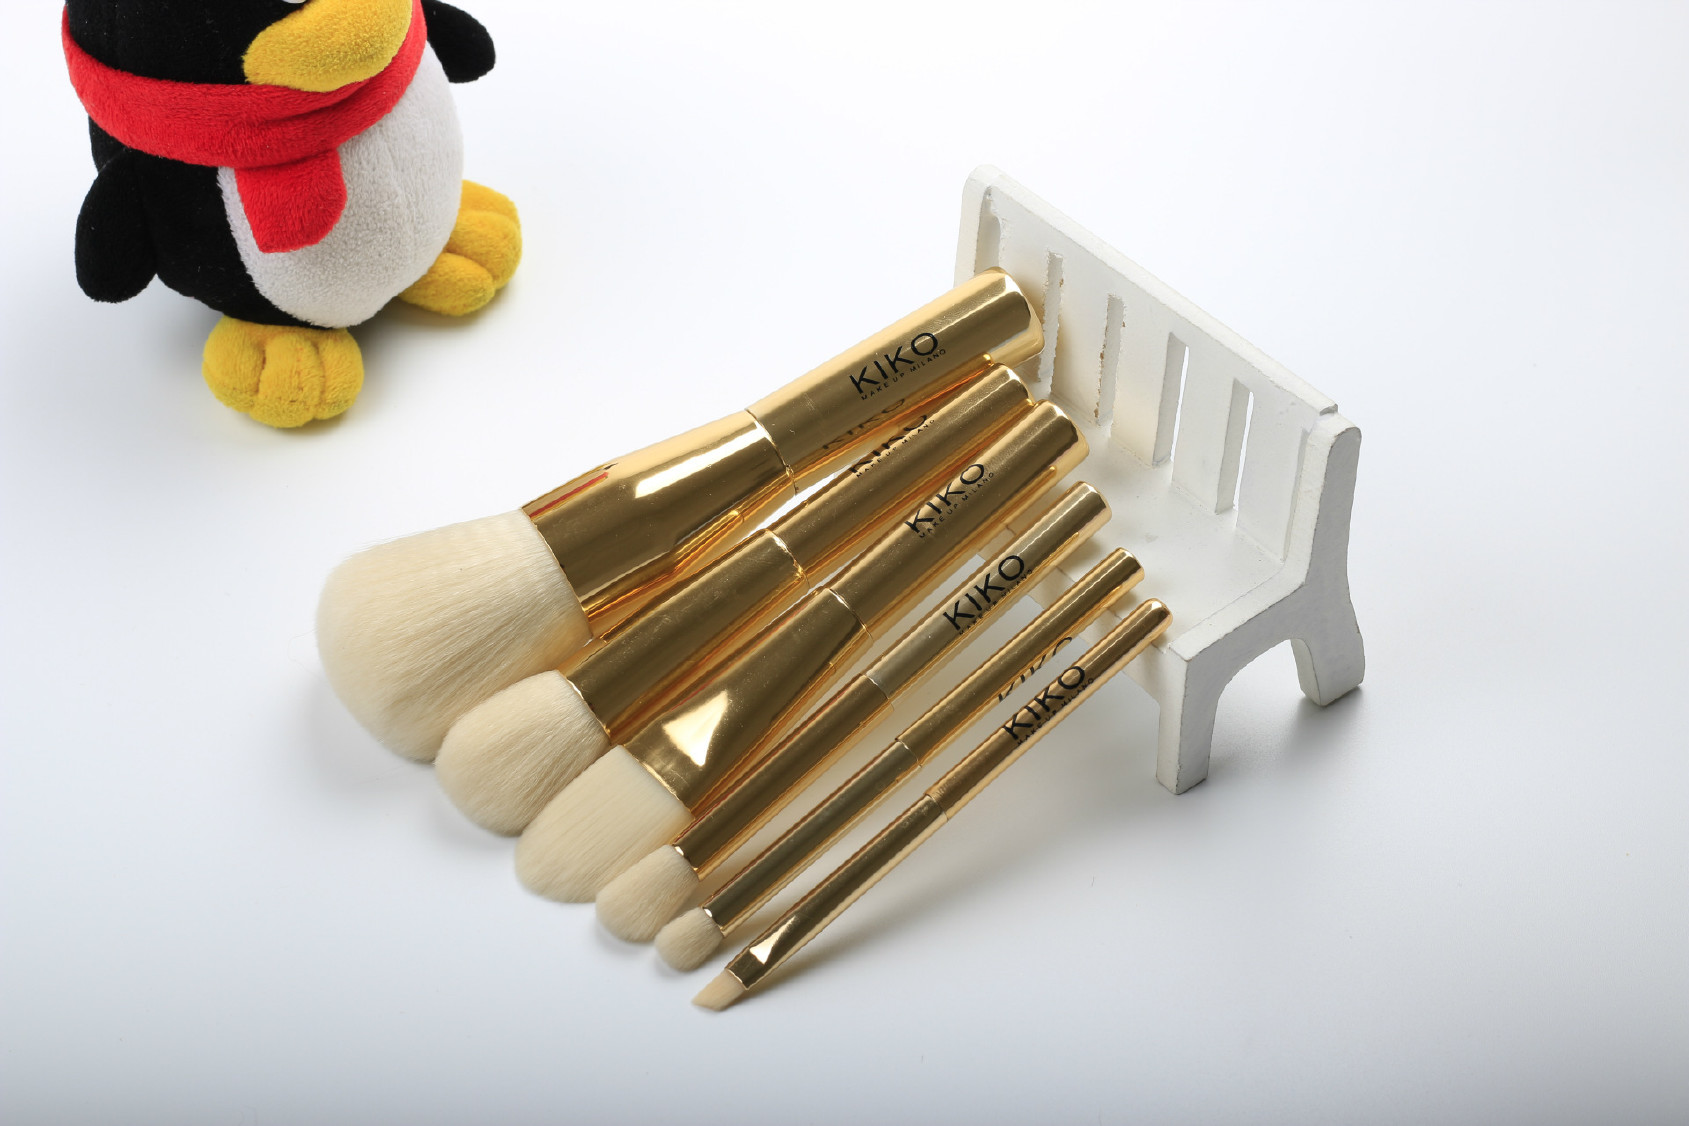 意大利kiko化妆刷 6支金色铝管化妆刷套装 专业化妆美妆工具示例图2